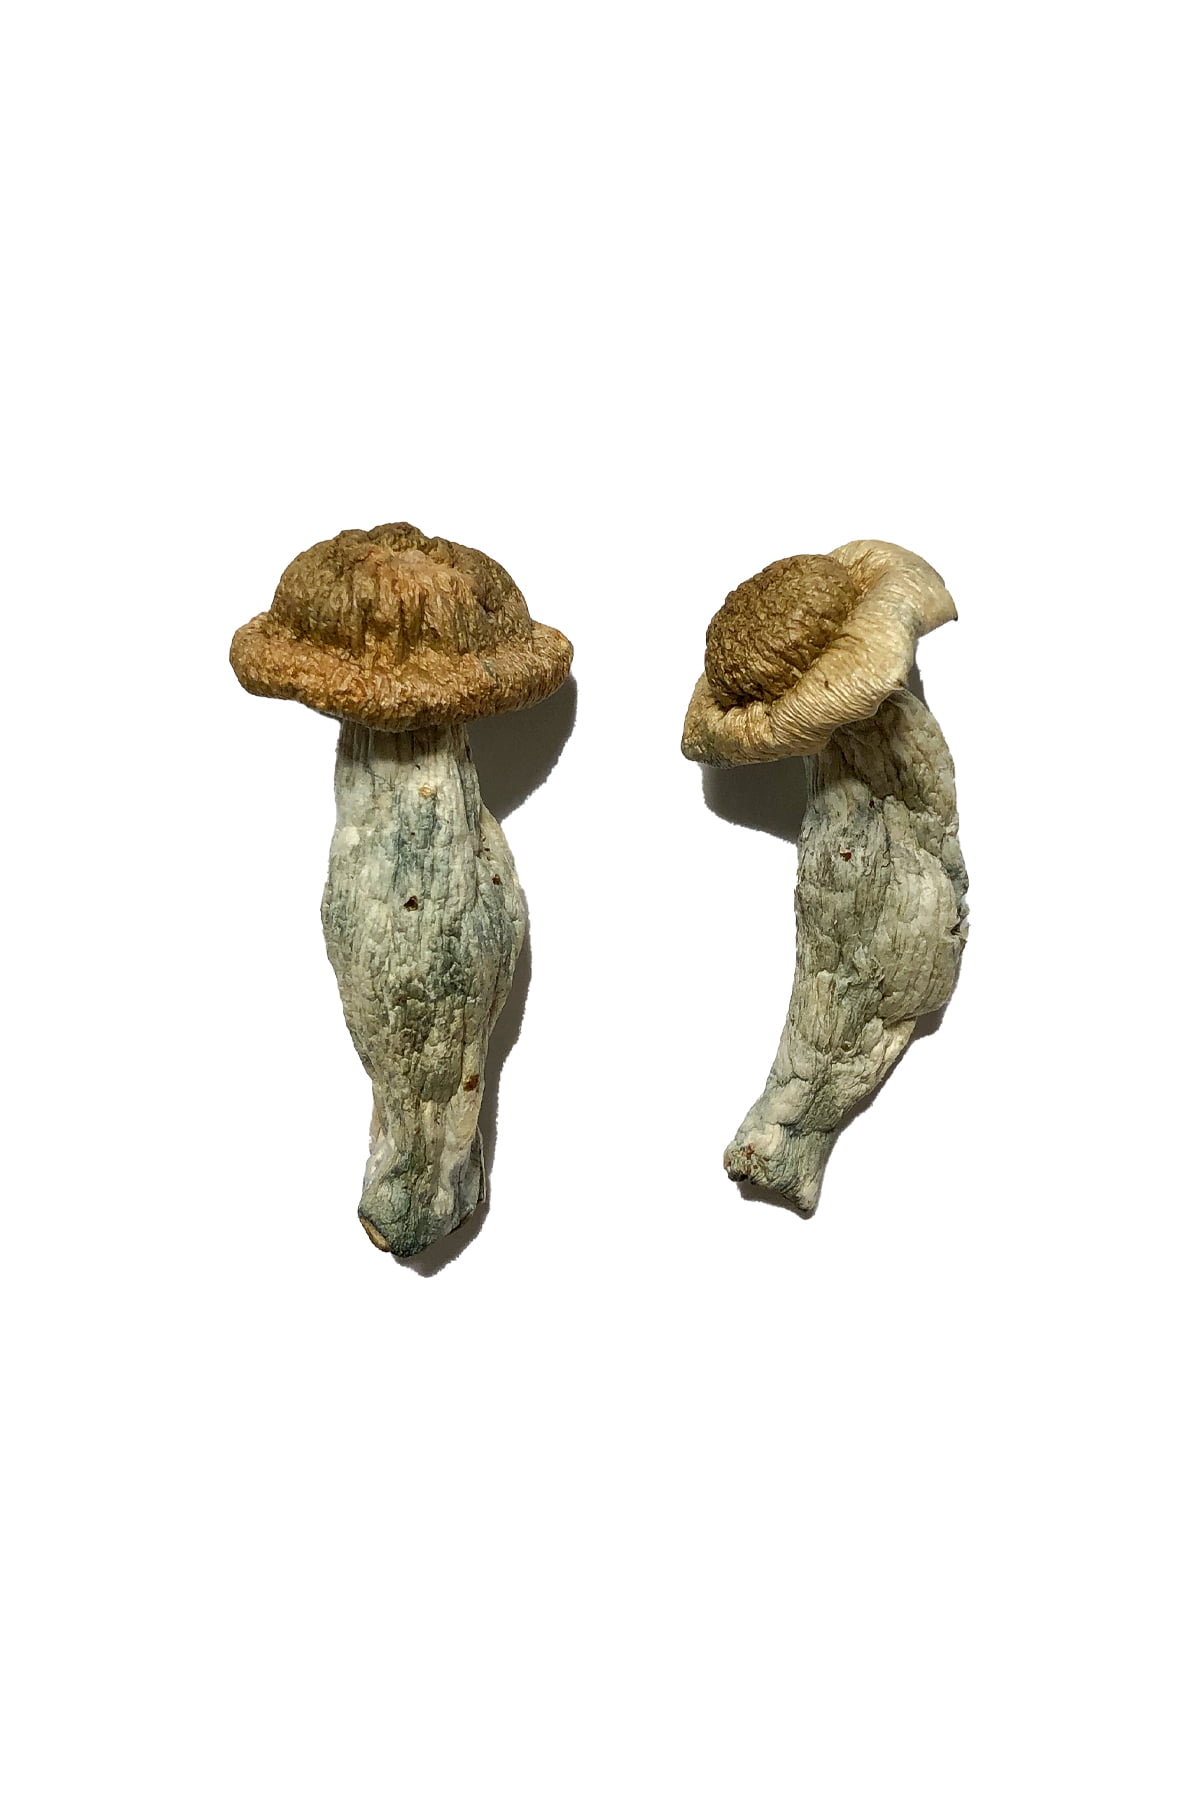 Sheperds Cut Penis Envy Magic Mushrooms